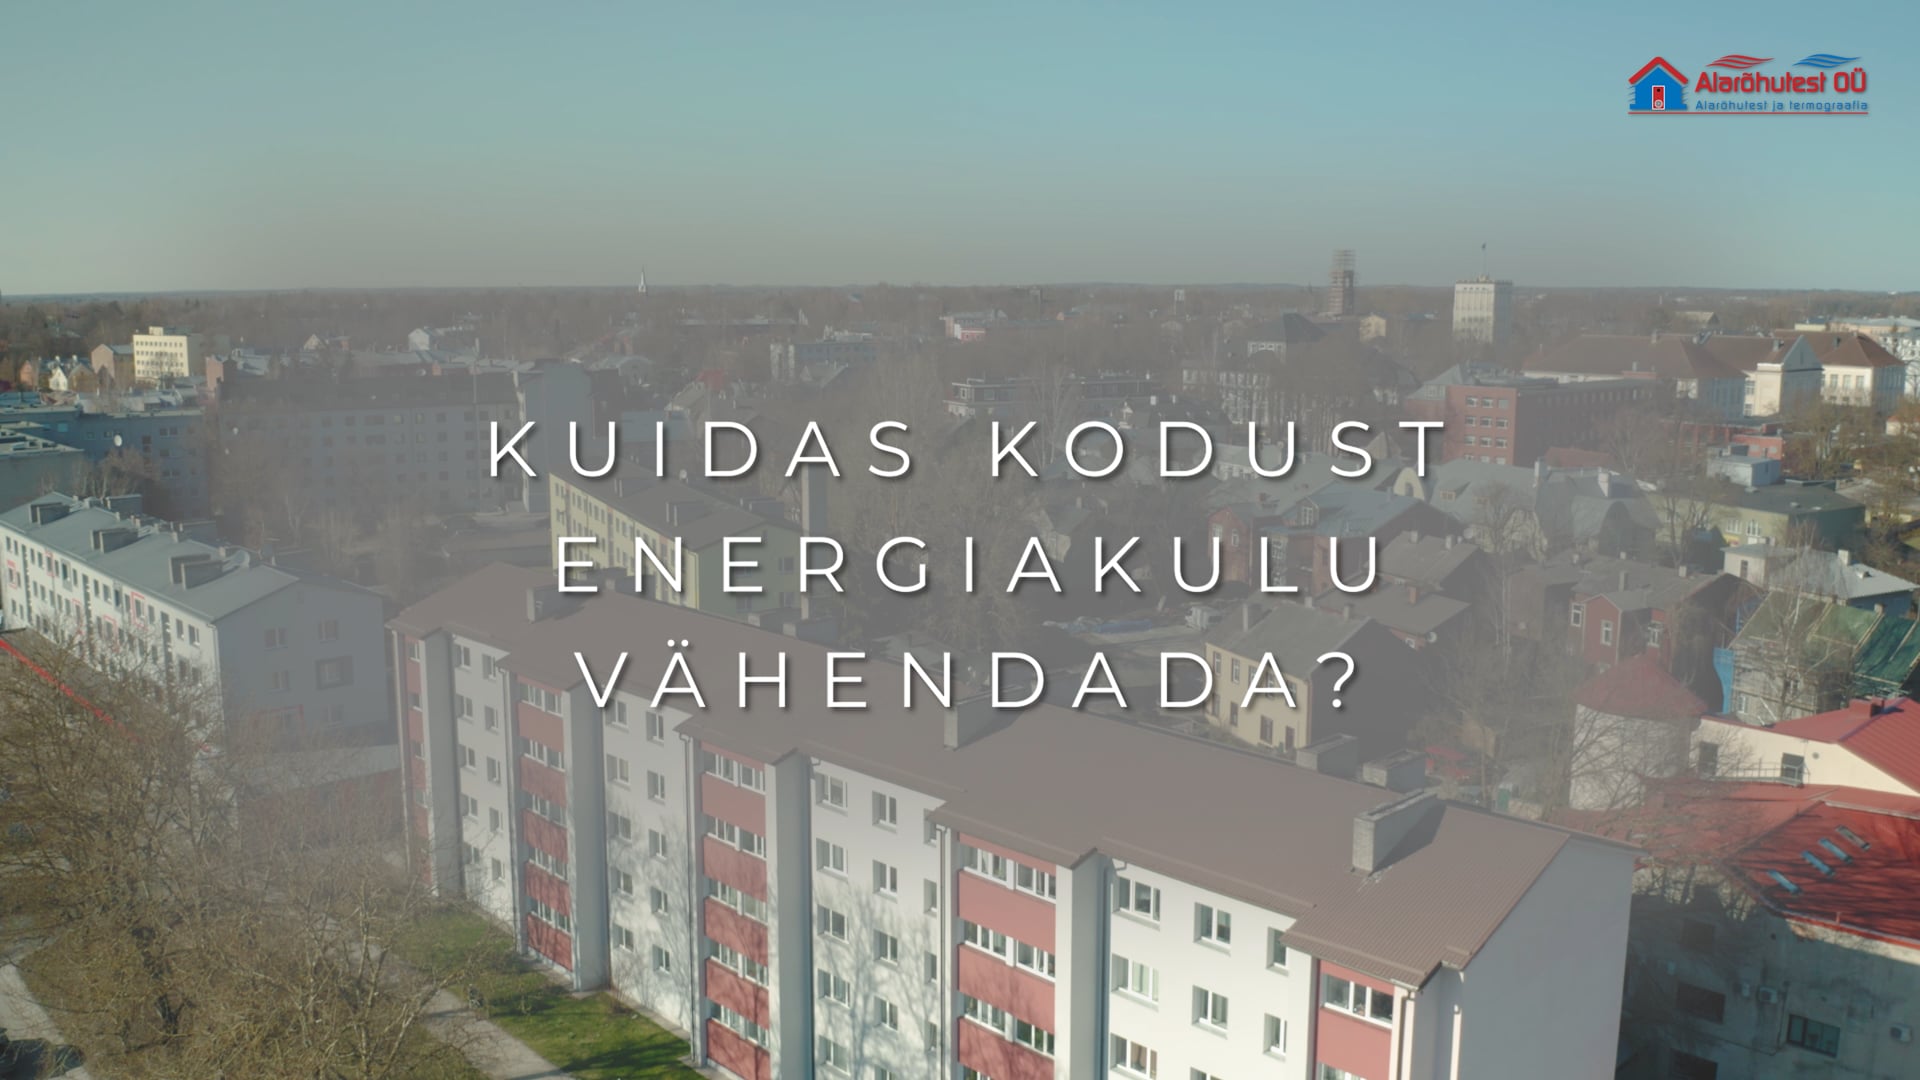 Kuidas kodust energiakulu vähendada?